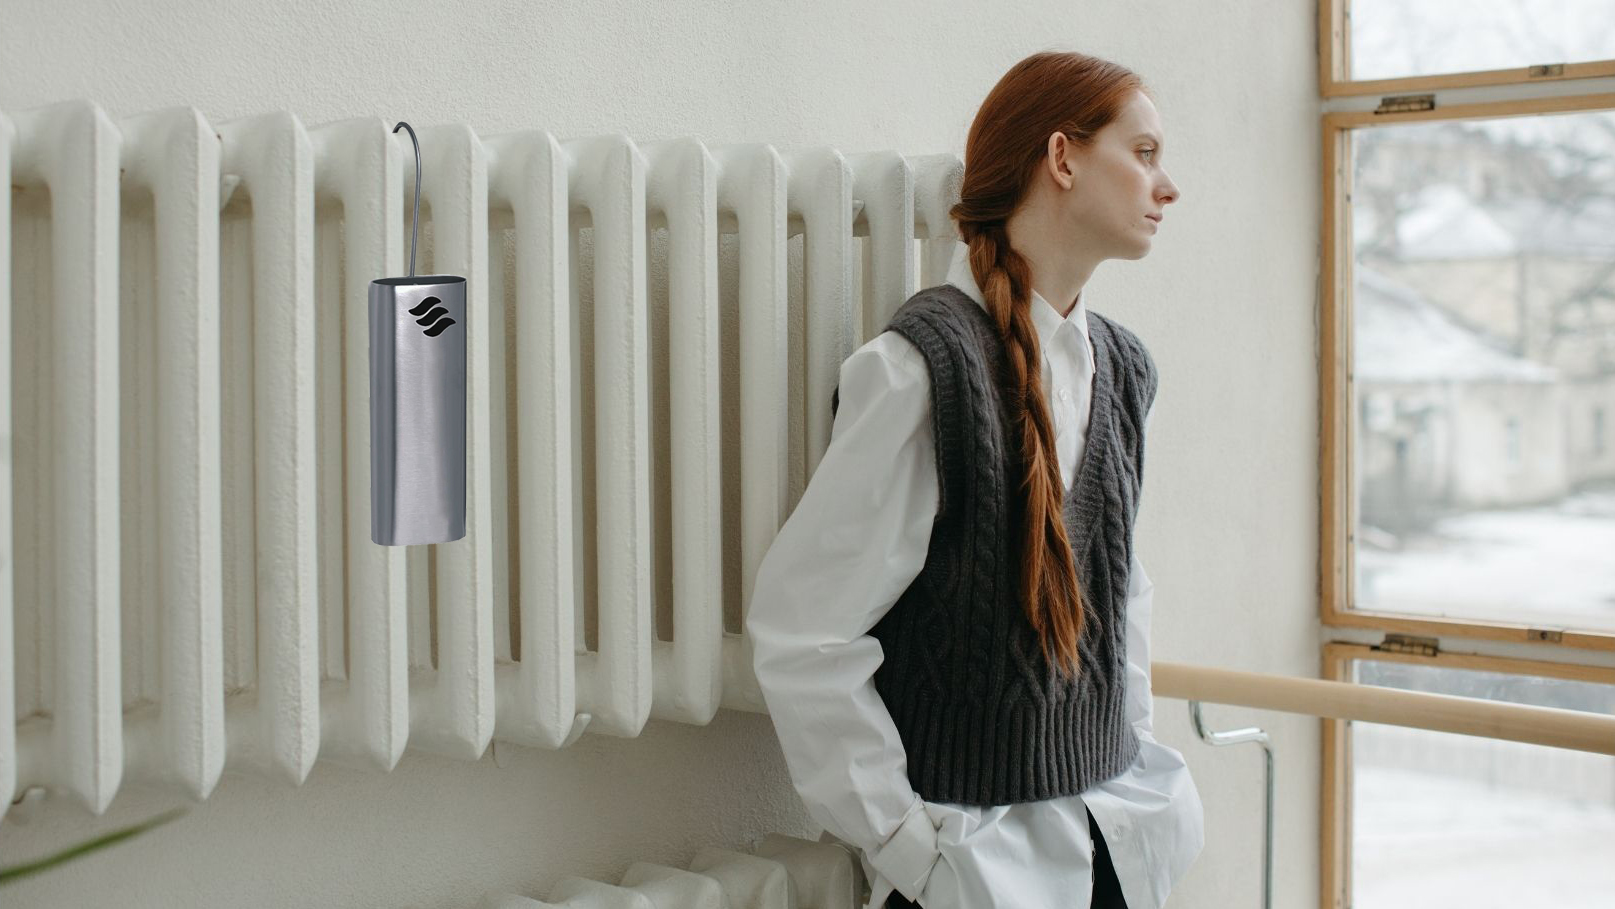 Saturateur radiateur, humidificateur radiateur en céramique blanche